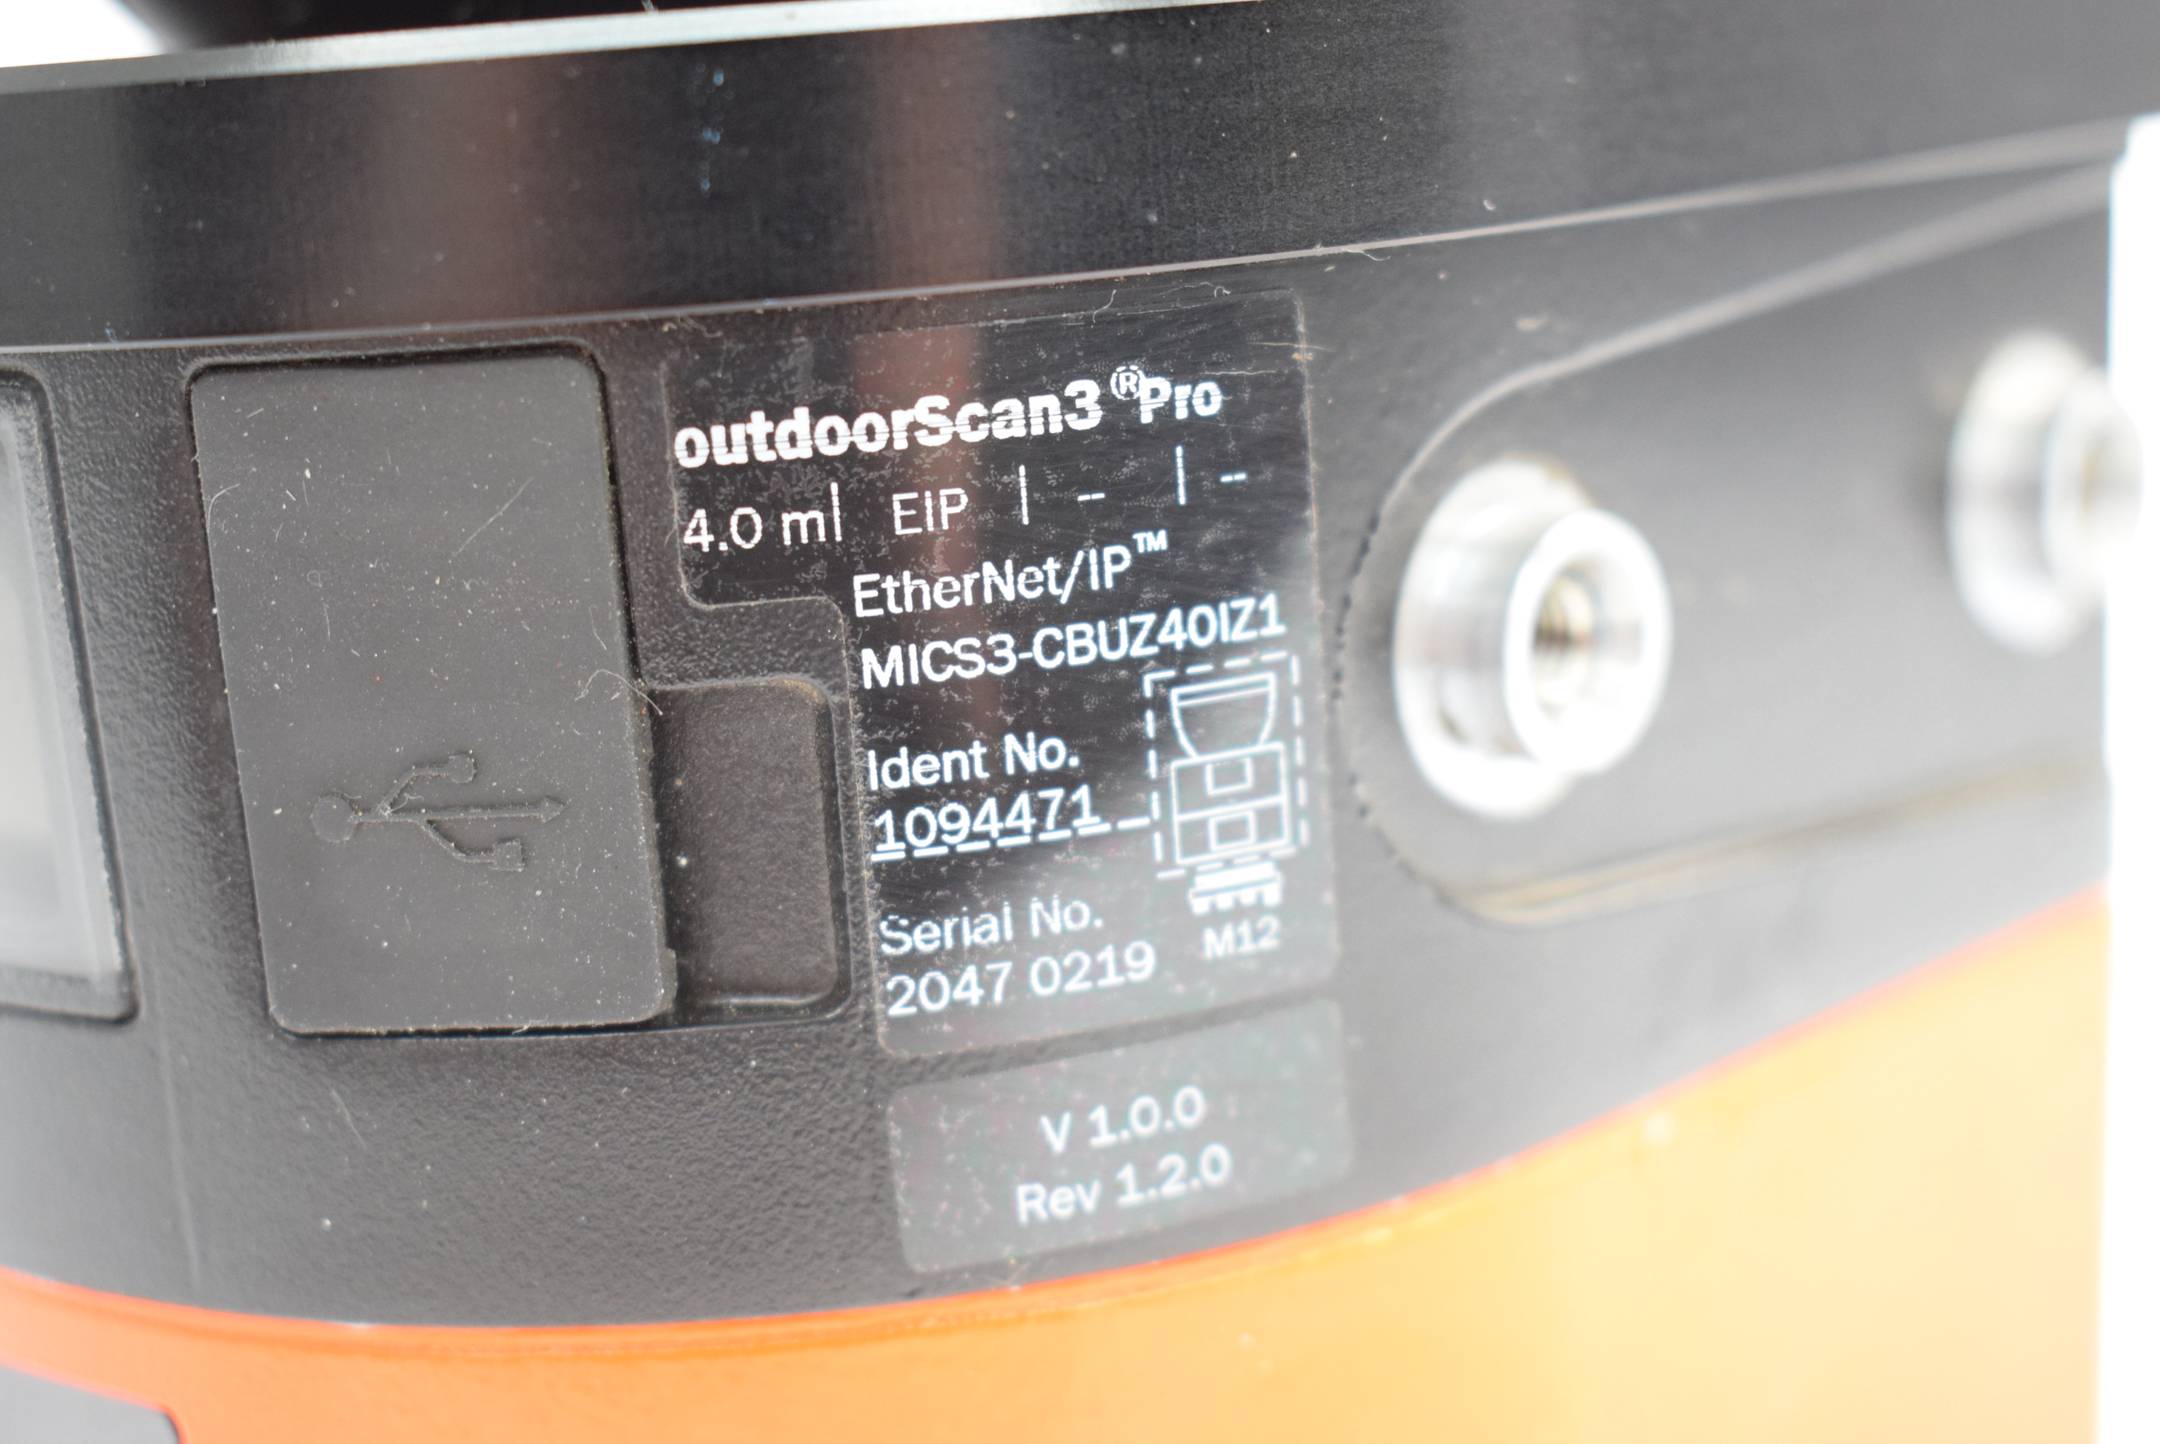 SICK Sicherheitslaserscanner outdoorScan3 Pro MICS3-CBUZ40IZ1 ( 1094471 )